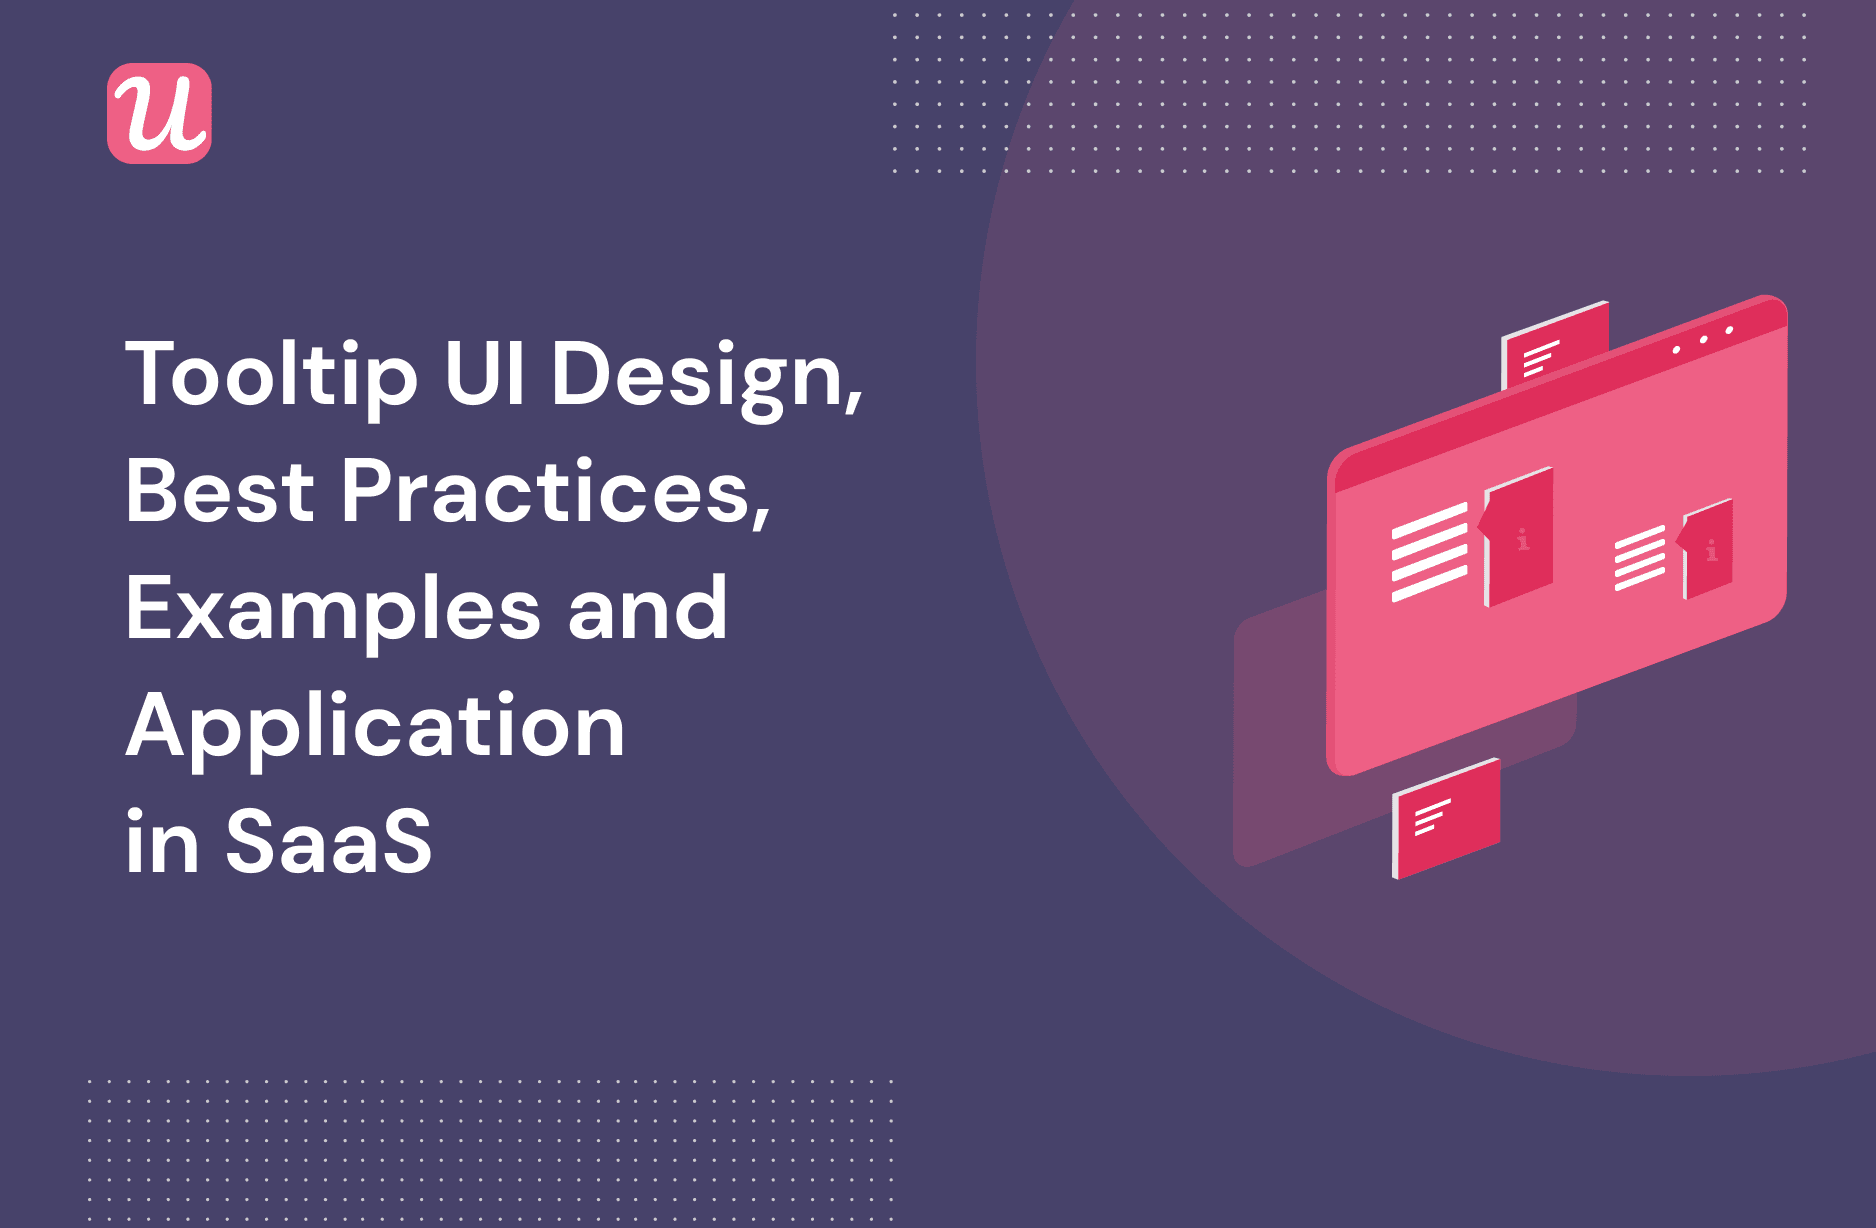 UI Design: Khám phá bức ảnh liên quan đến UI Design để tìm hiểu cách tạo ra giao diện đẹp mắt và dễ sử dụng cho người dùng. Với UI Design, bạn có thể truyền tải thông điệp và chức năng của sản phẩm của mình một cách rõ ràng và thu hút sự chú ý của khách hàng.